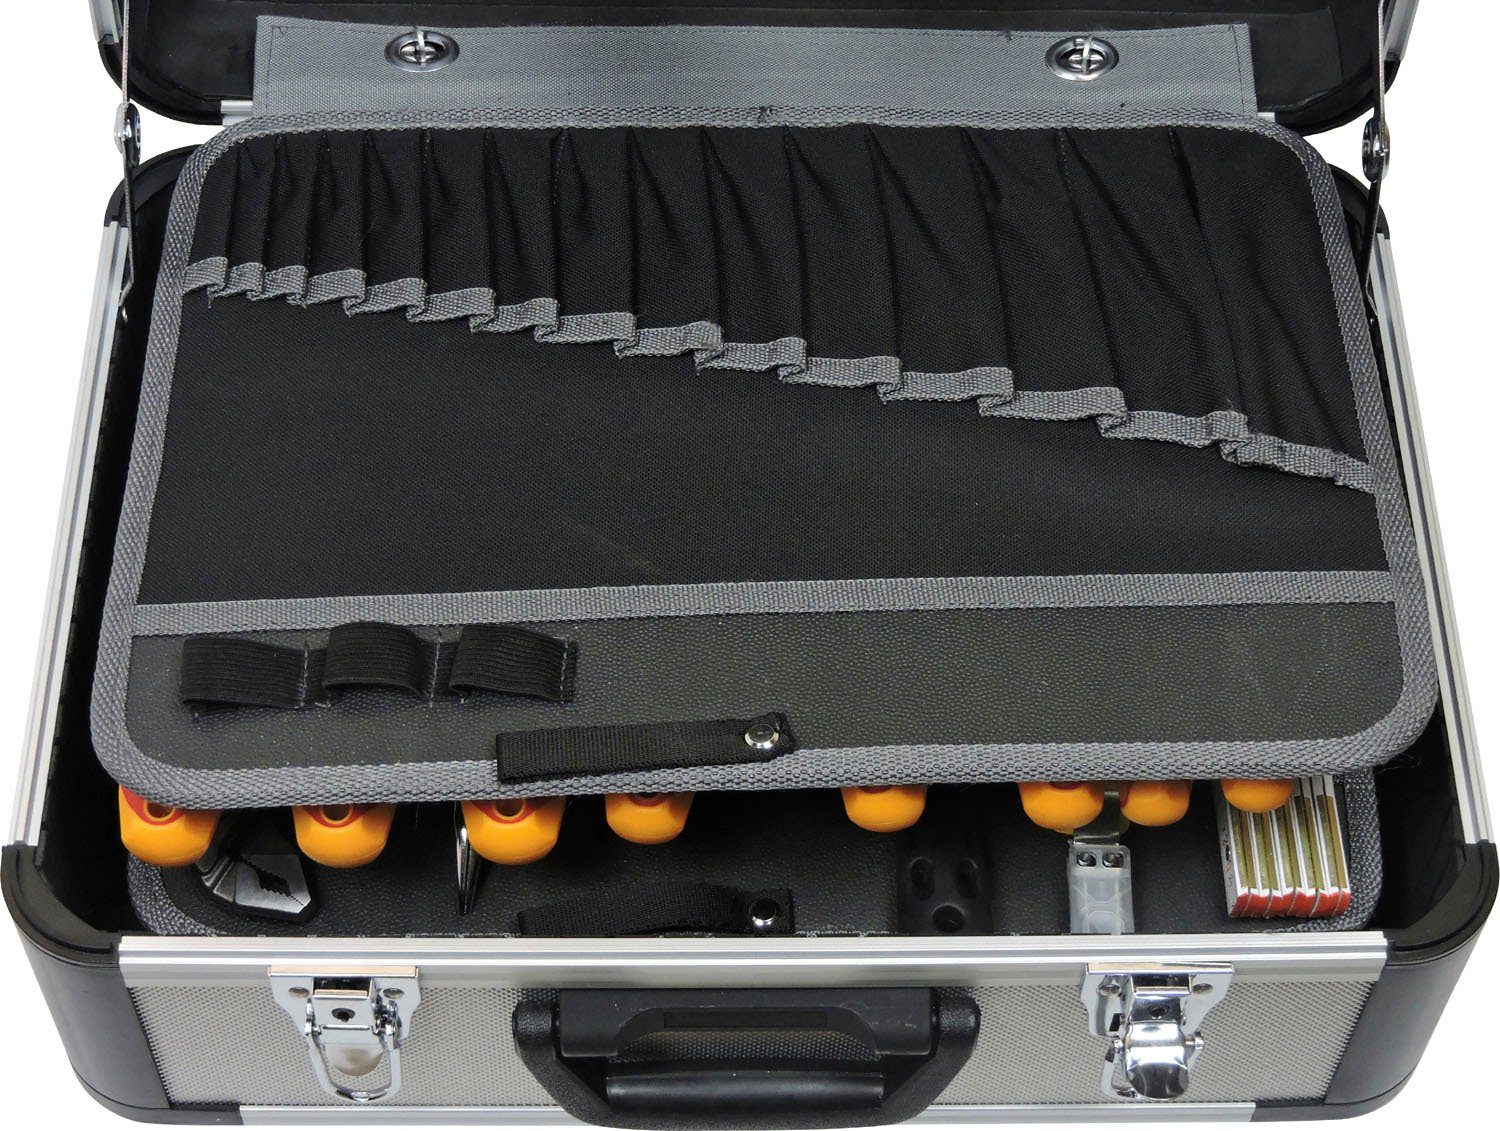 31-tlg., 478-10, Werkzeugkoffer den Werkzeugset für Elektriker FAMEX